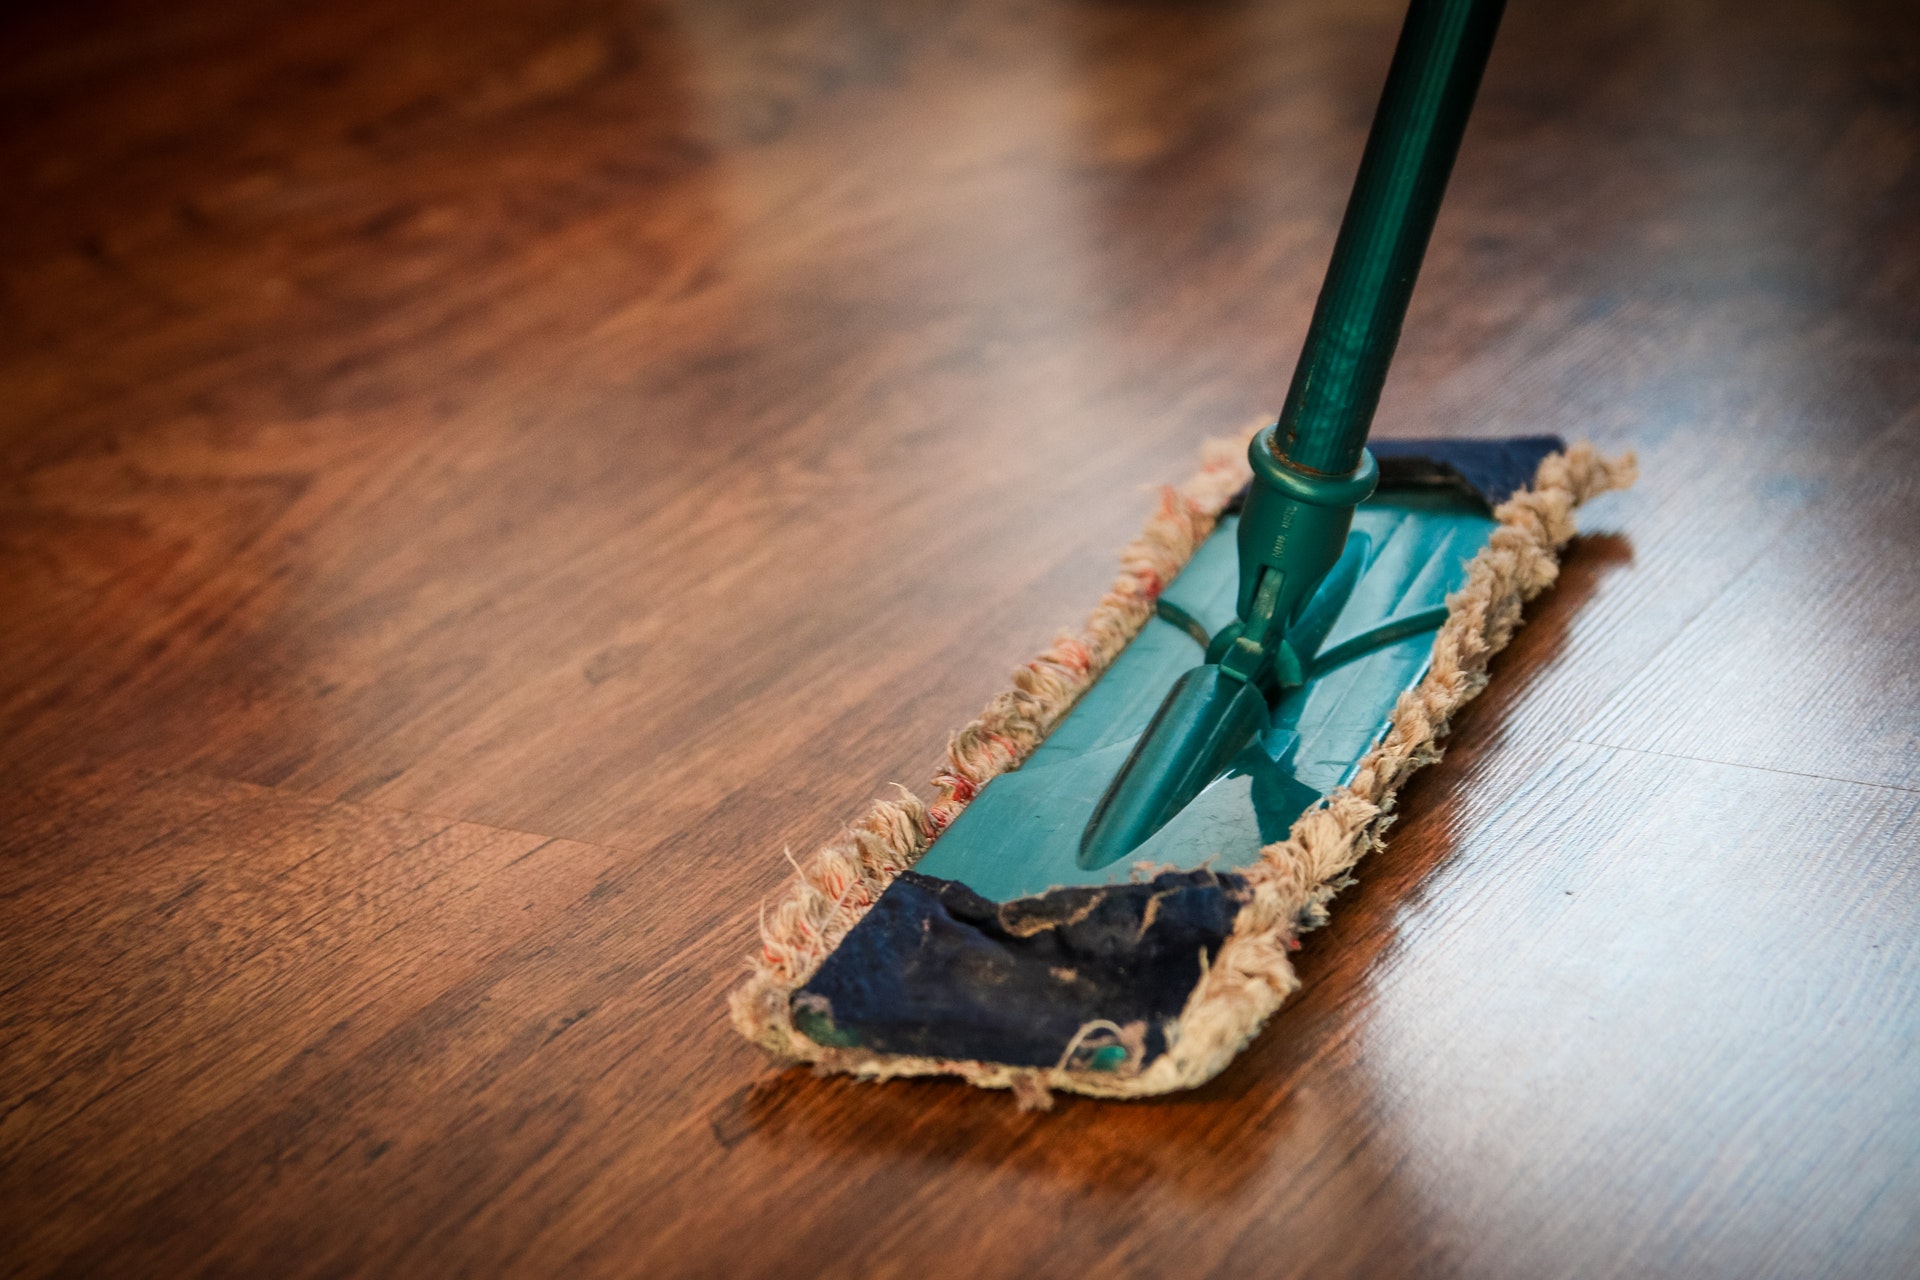 Tackle Cleaning Vinyl Plank Flooring, Best Way To Sweep Hardwood Floors